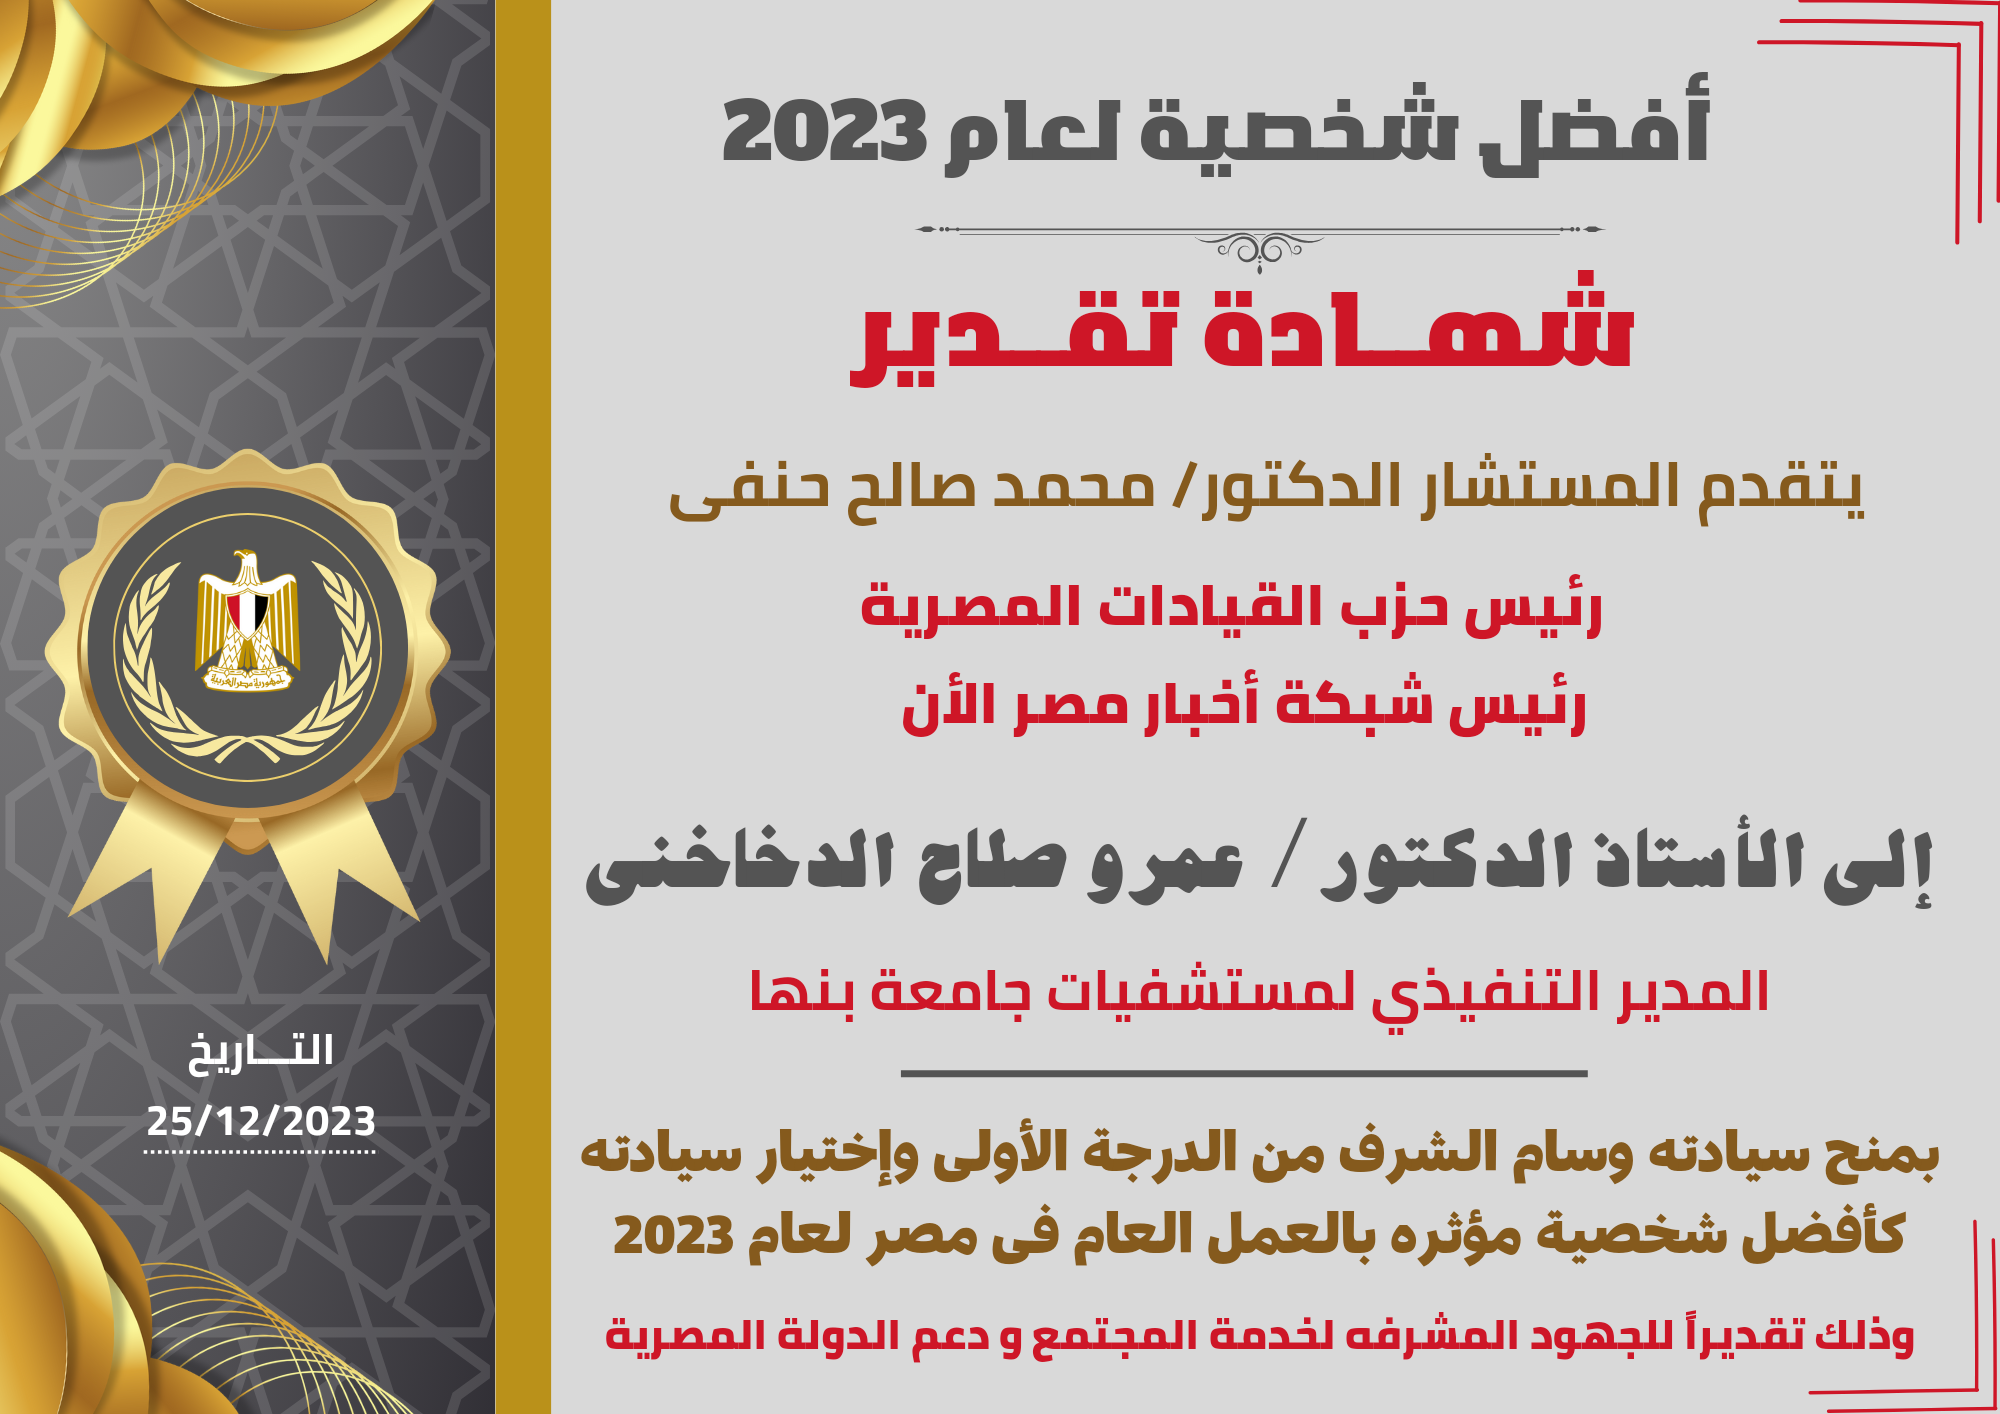 رئيس شبكة أخبار مصر الأن يمنح المدير التنفيذي لمستشفيات جامعة بنها وسام الشرف من الدرجة الأولى كأفضل شخصية مؤثره لعام 2023